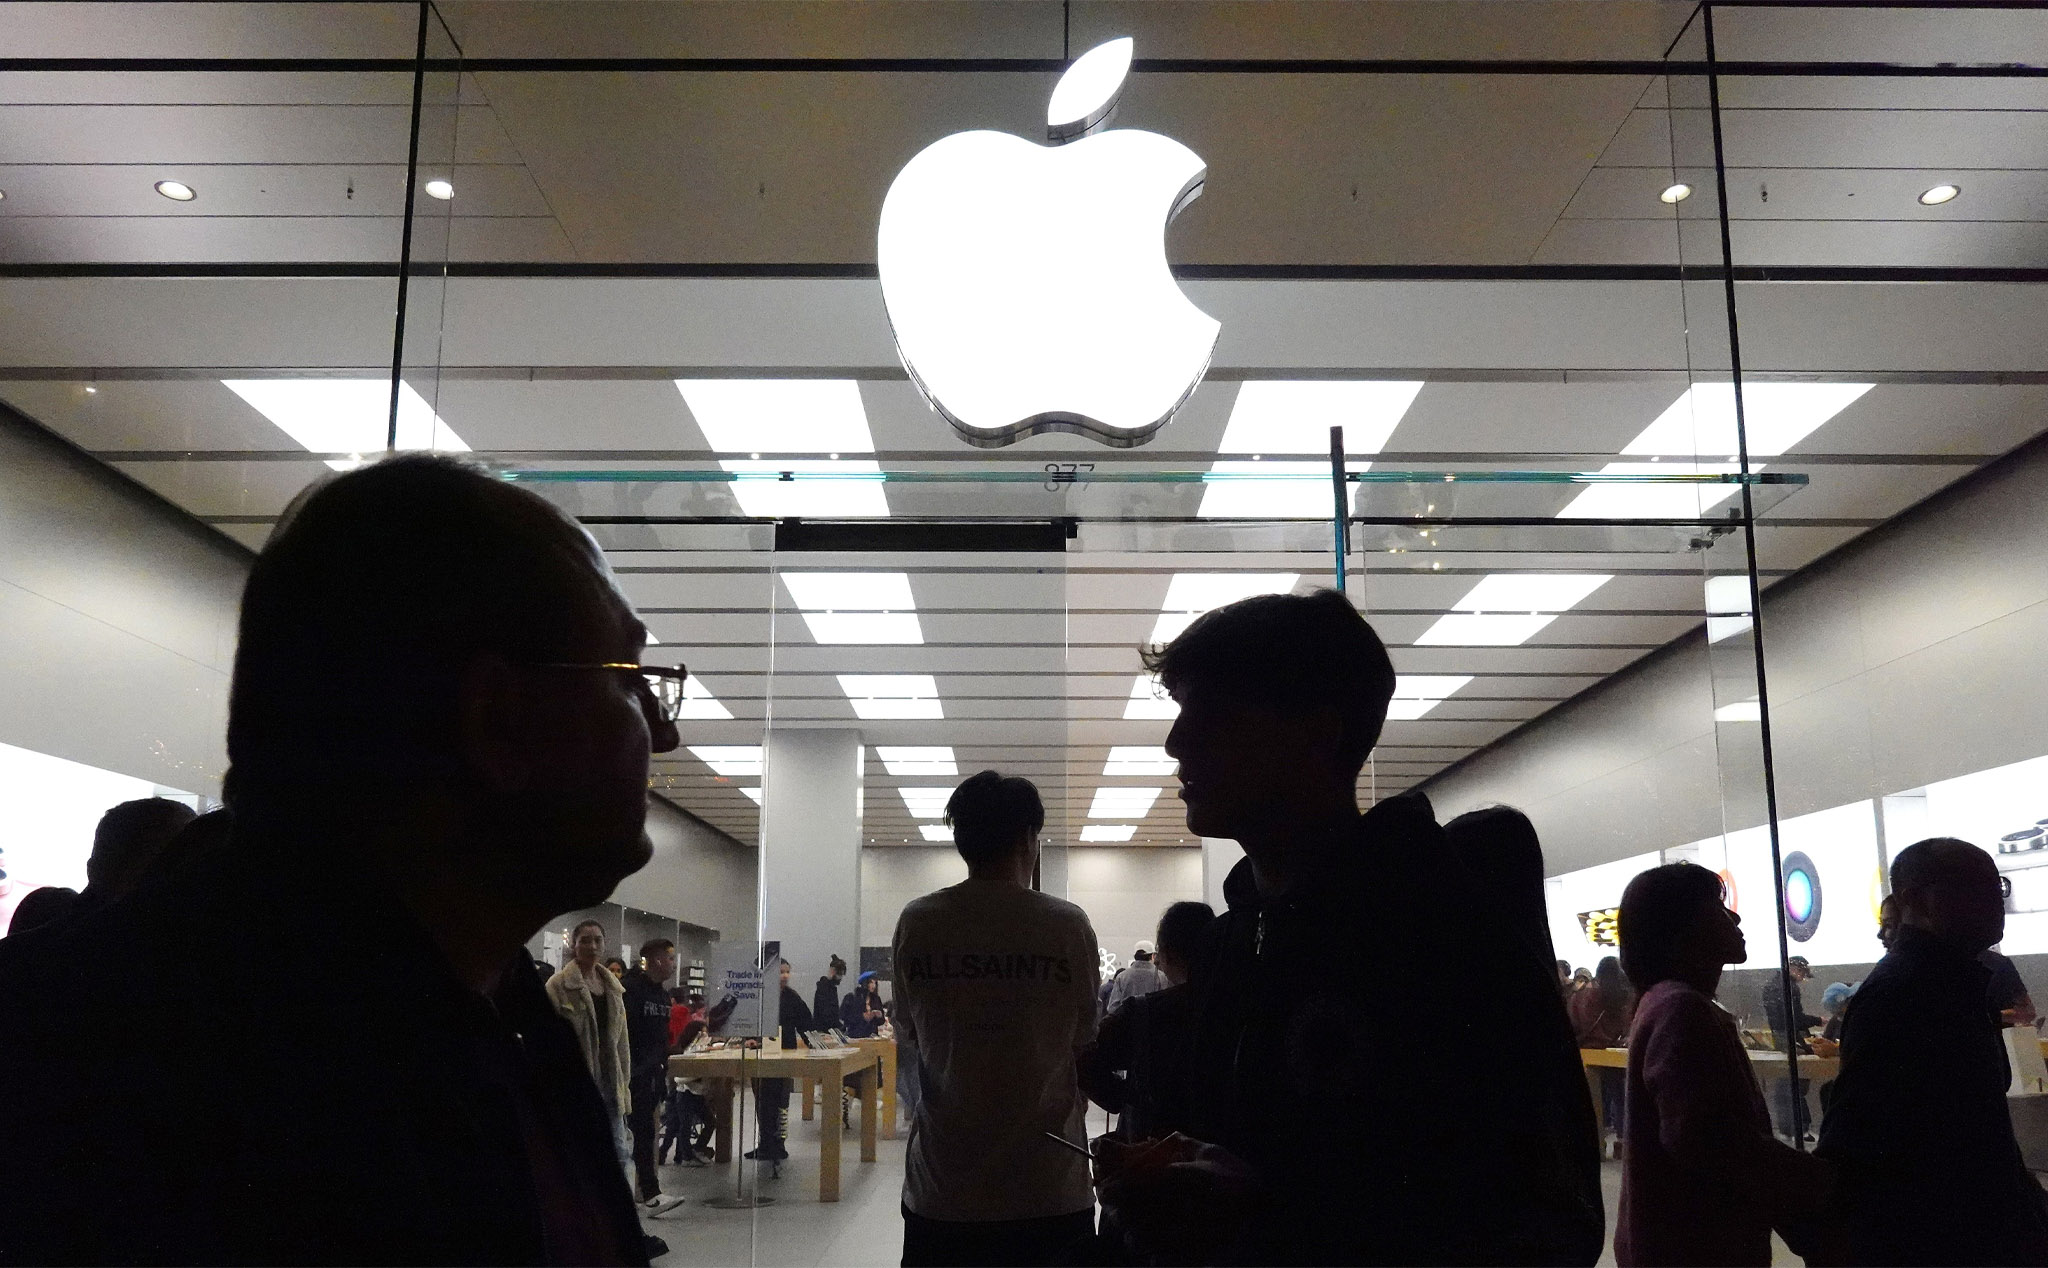 Chính phủ Mỹ kiện Apple, cáo buộc độc quyền hệ sinh thái iPhone